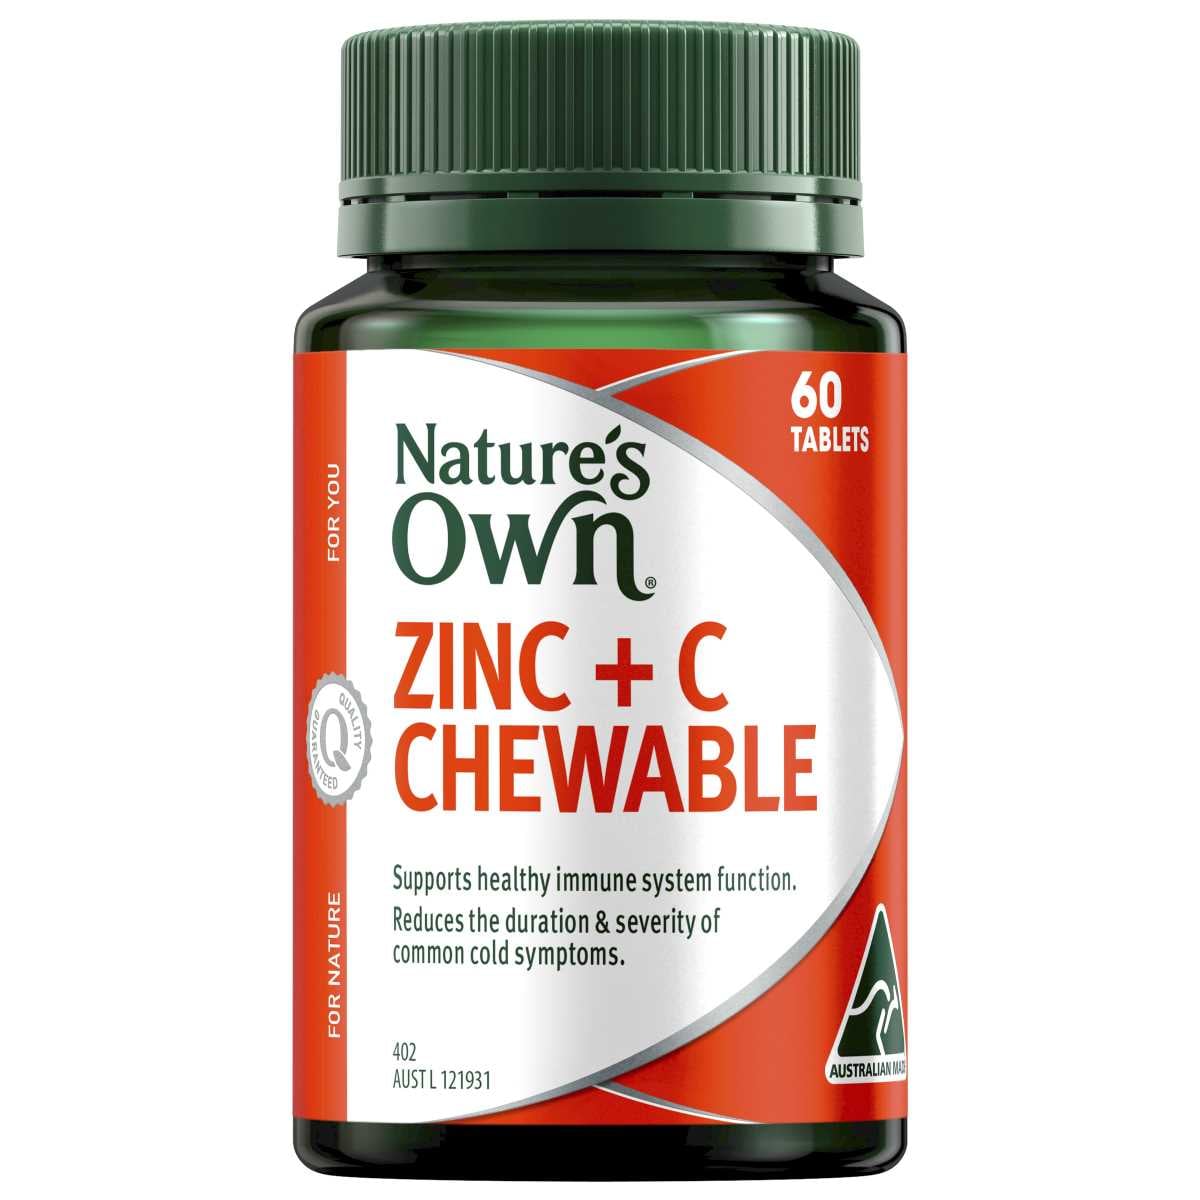 Natures Own Zinc + C Chewable 60 Tablets